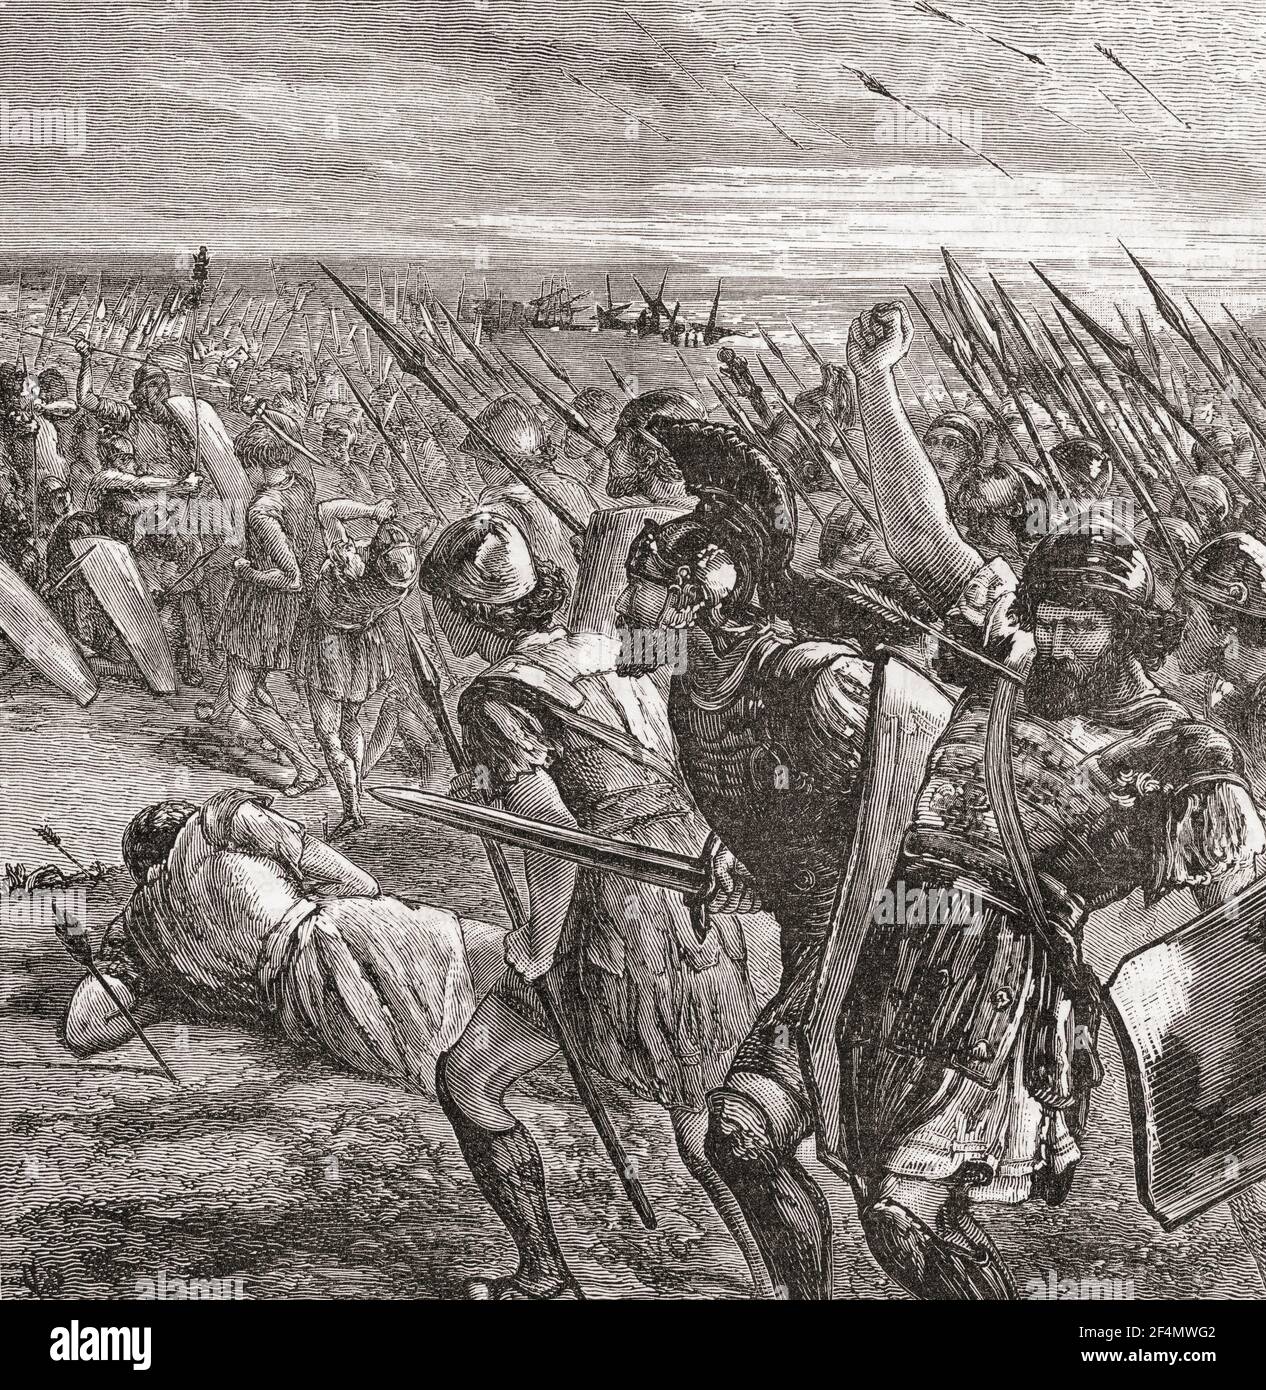 Die Schlacht von Marathon, 490 BC, während der ersten persischen Invasion von Griechenland, kämpfte zwischen Athen, unterstützt durch Plataea, und das persische Reich. Aus Cassells Universal History, veröffentlicht 1888. Stockfoto